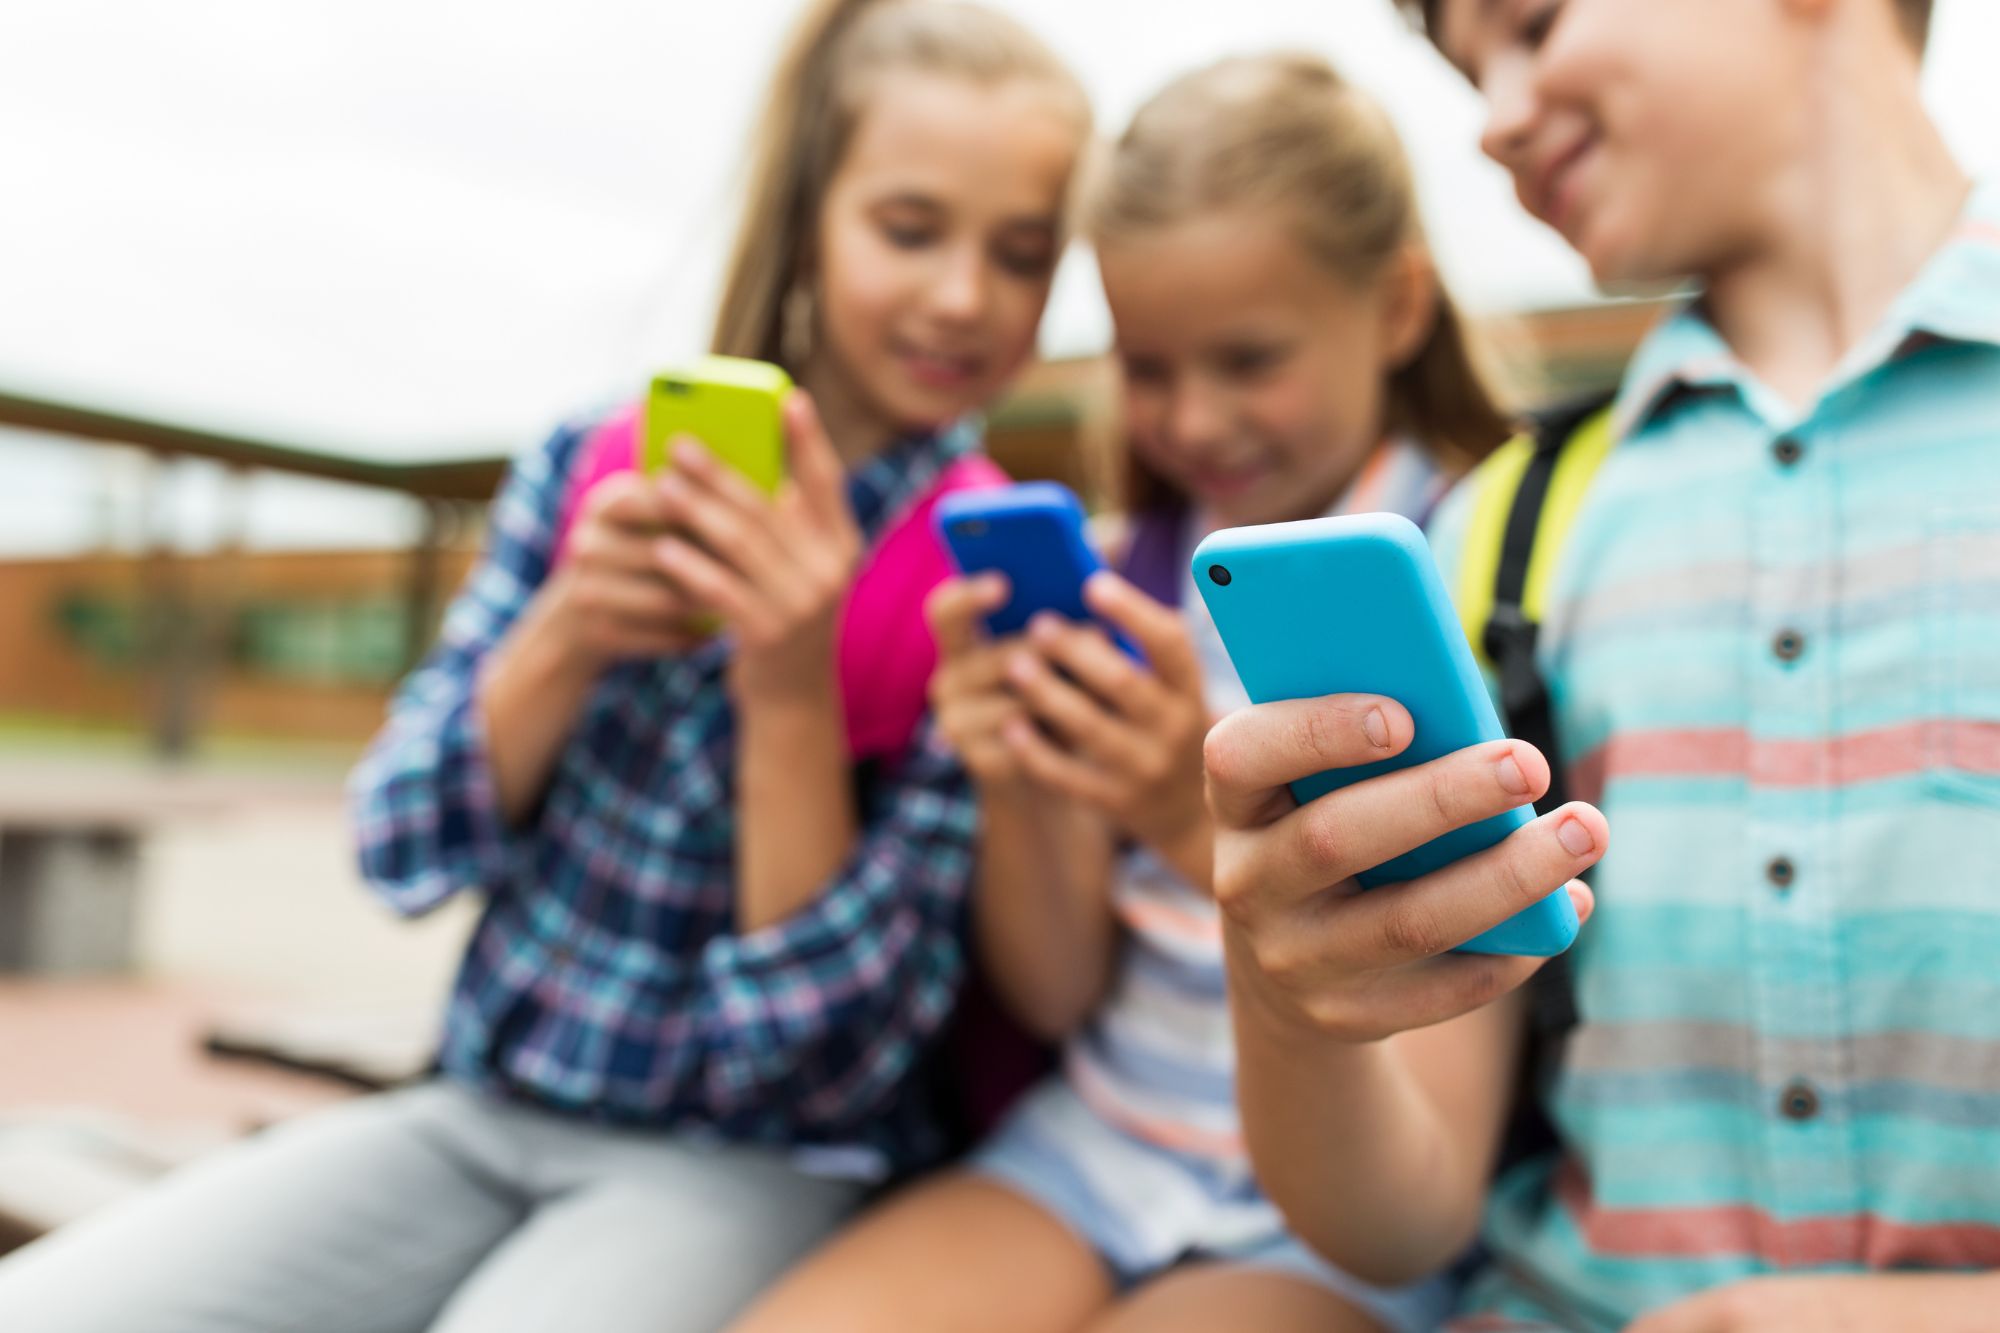 San Marino vuole vietare gli smartphone agli under 11 nelle scuole e in luoghi pubblici